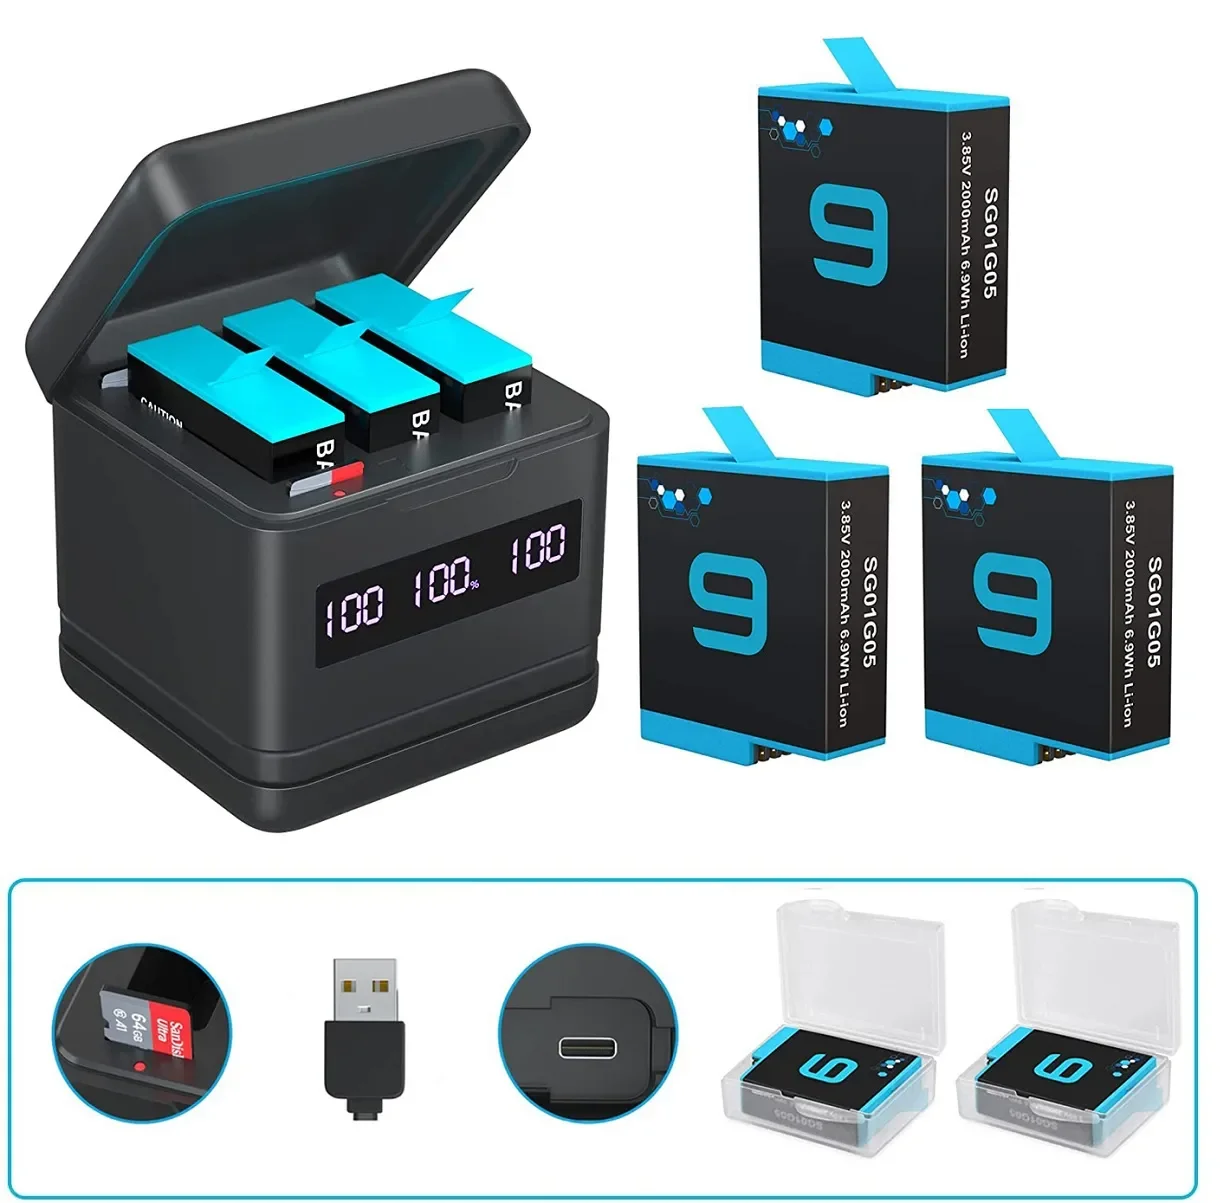 

NEW PUENDI Bateria Hero 9/10, szybka ładowarka USB i Type-C, z funkcją szybkiego czytnika kart SD, używana do akcesoriów do